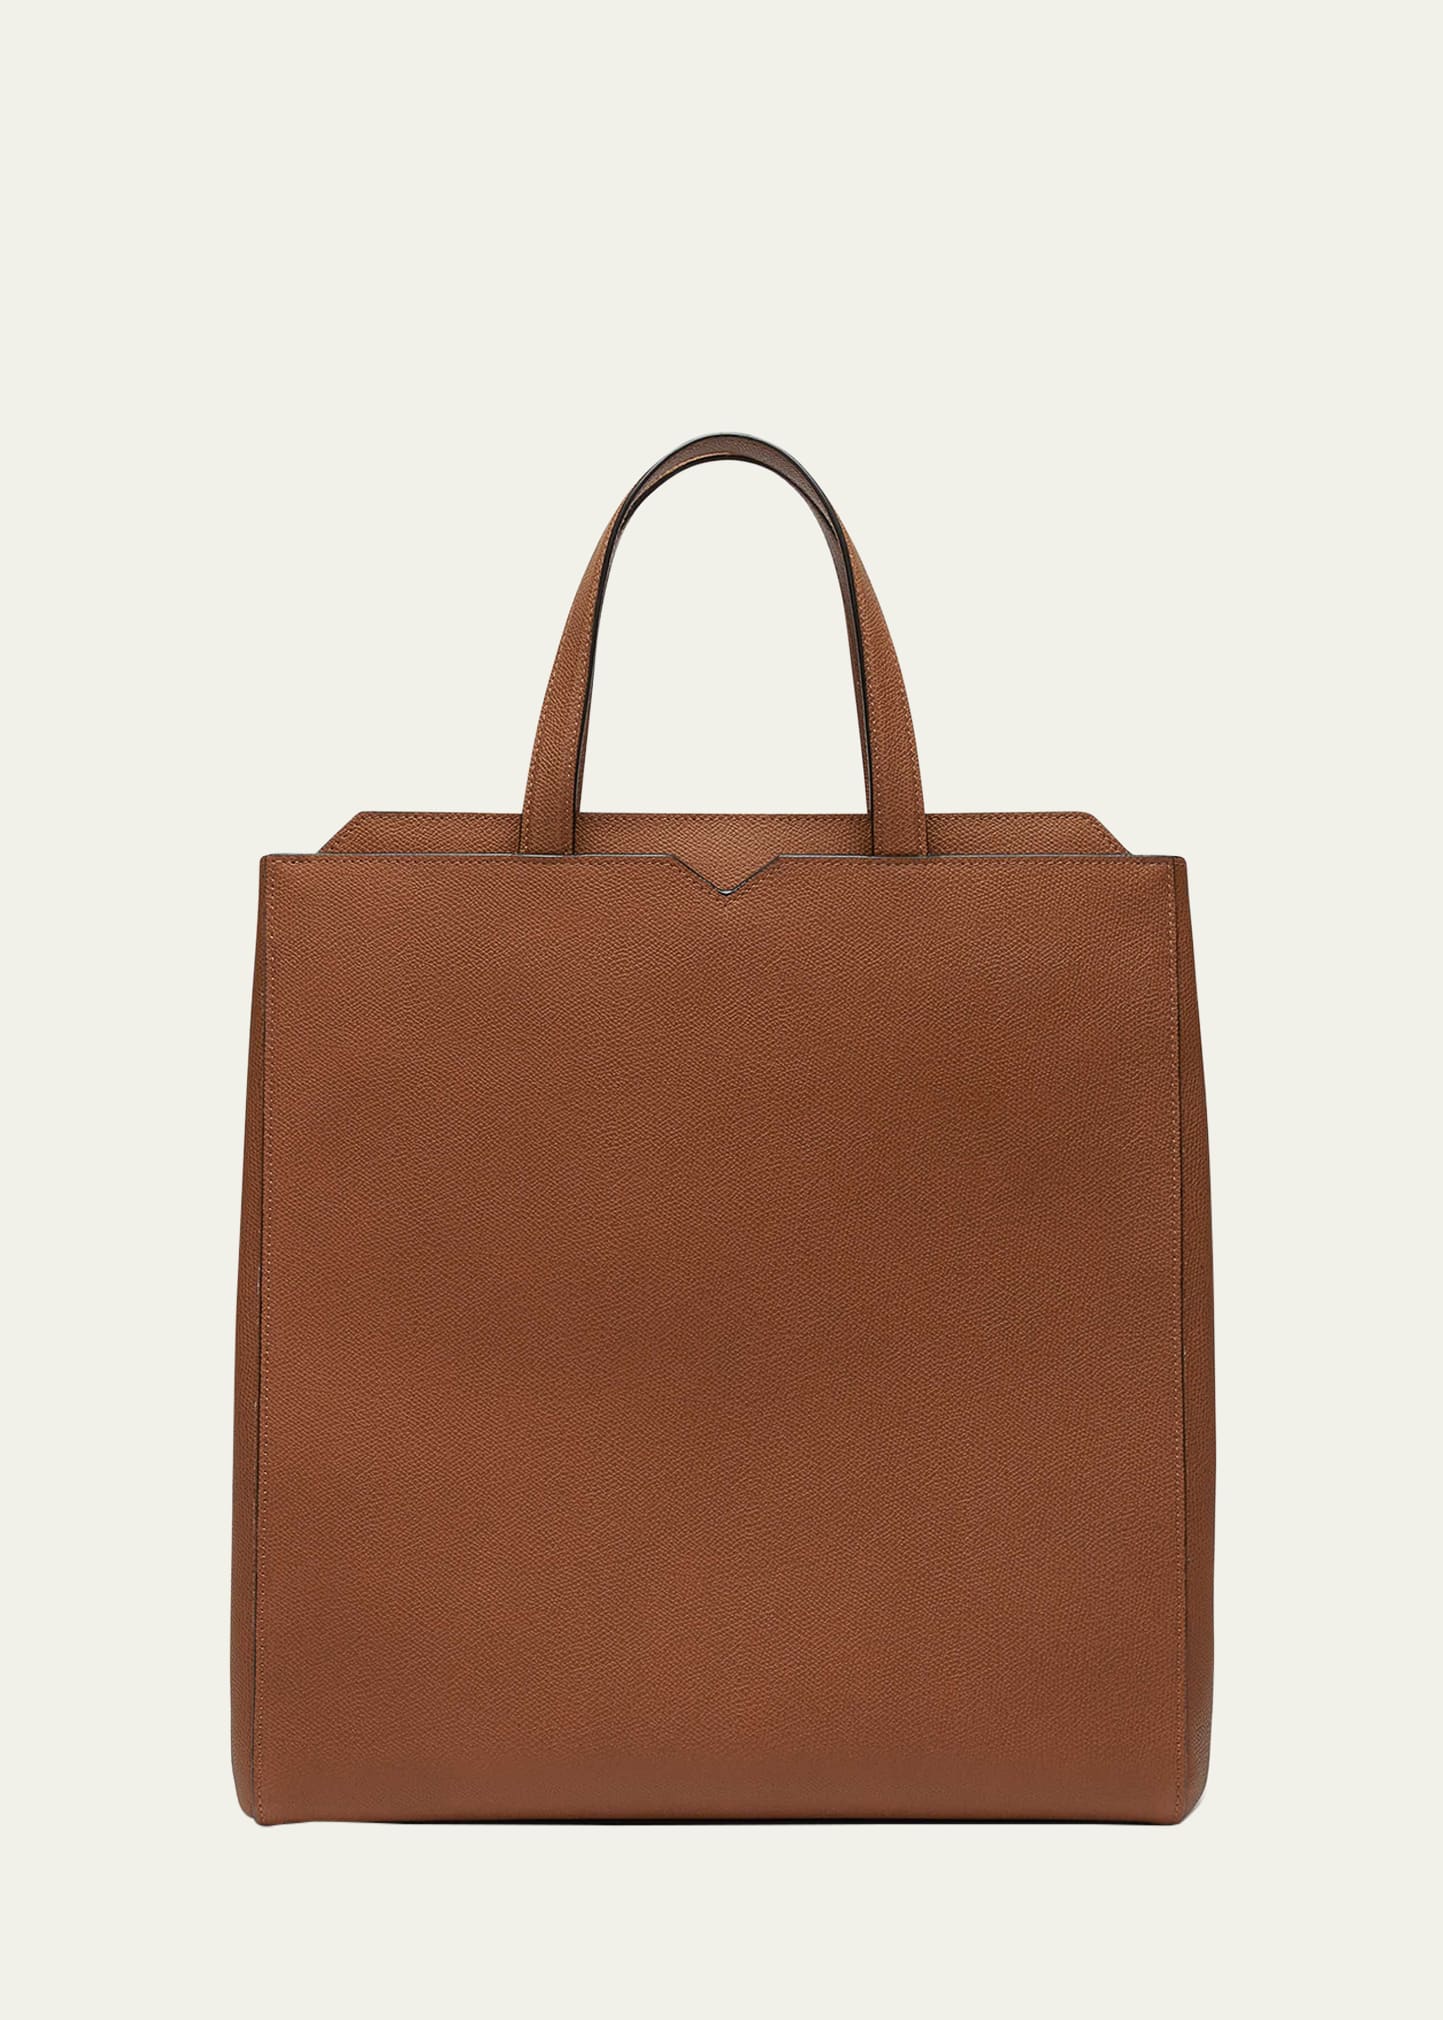 Valextra Men's V-line Calfksin Tote Bag In Brown